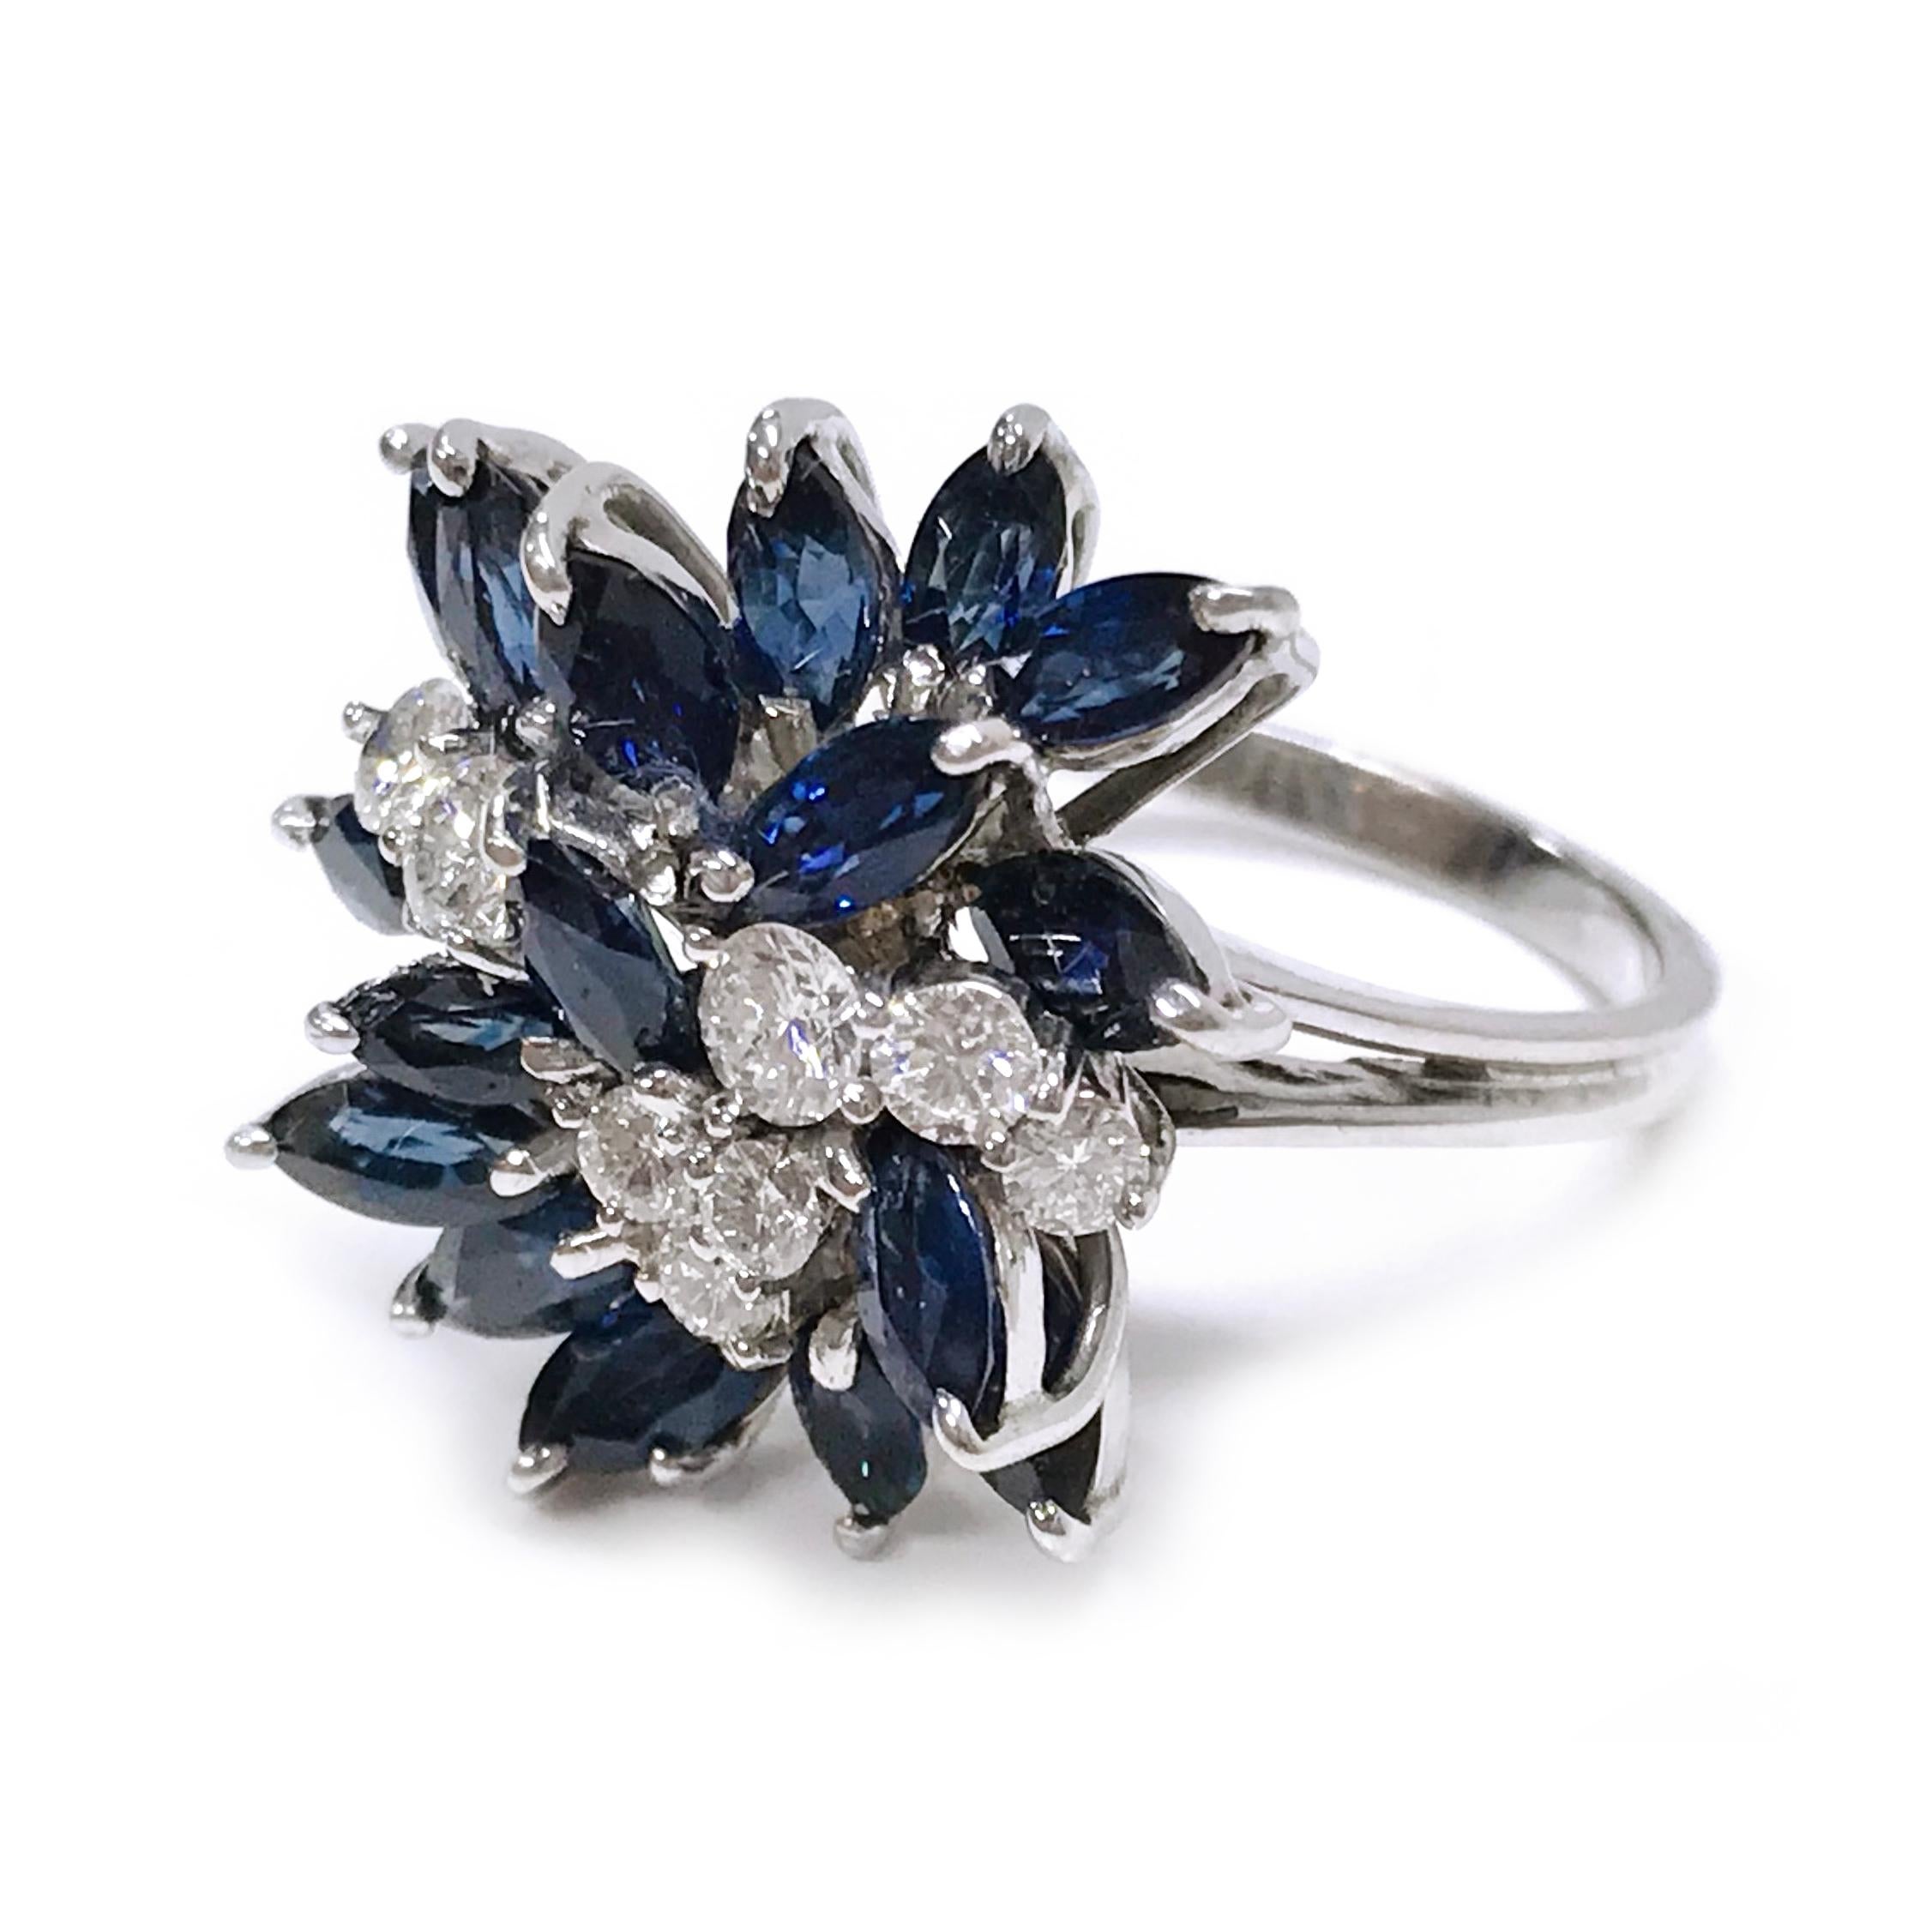 18 Karat Weißgold Marquise-Schliff Blauer Saphir Diamant Ring. Der geteilte Ring ist mit siebzehn blauen Saphiren im Marquiseschliff und acht runden Diamanten besetzt. Alle Steine sind in Weißgold gefasst. Das Gesamtkaratgewicht der Saphire beträgt